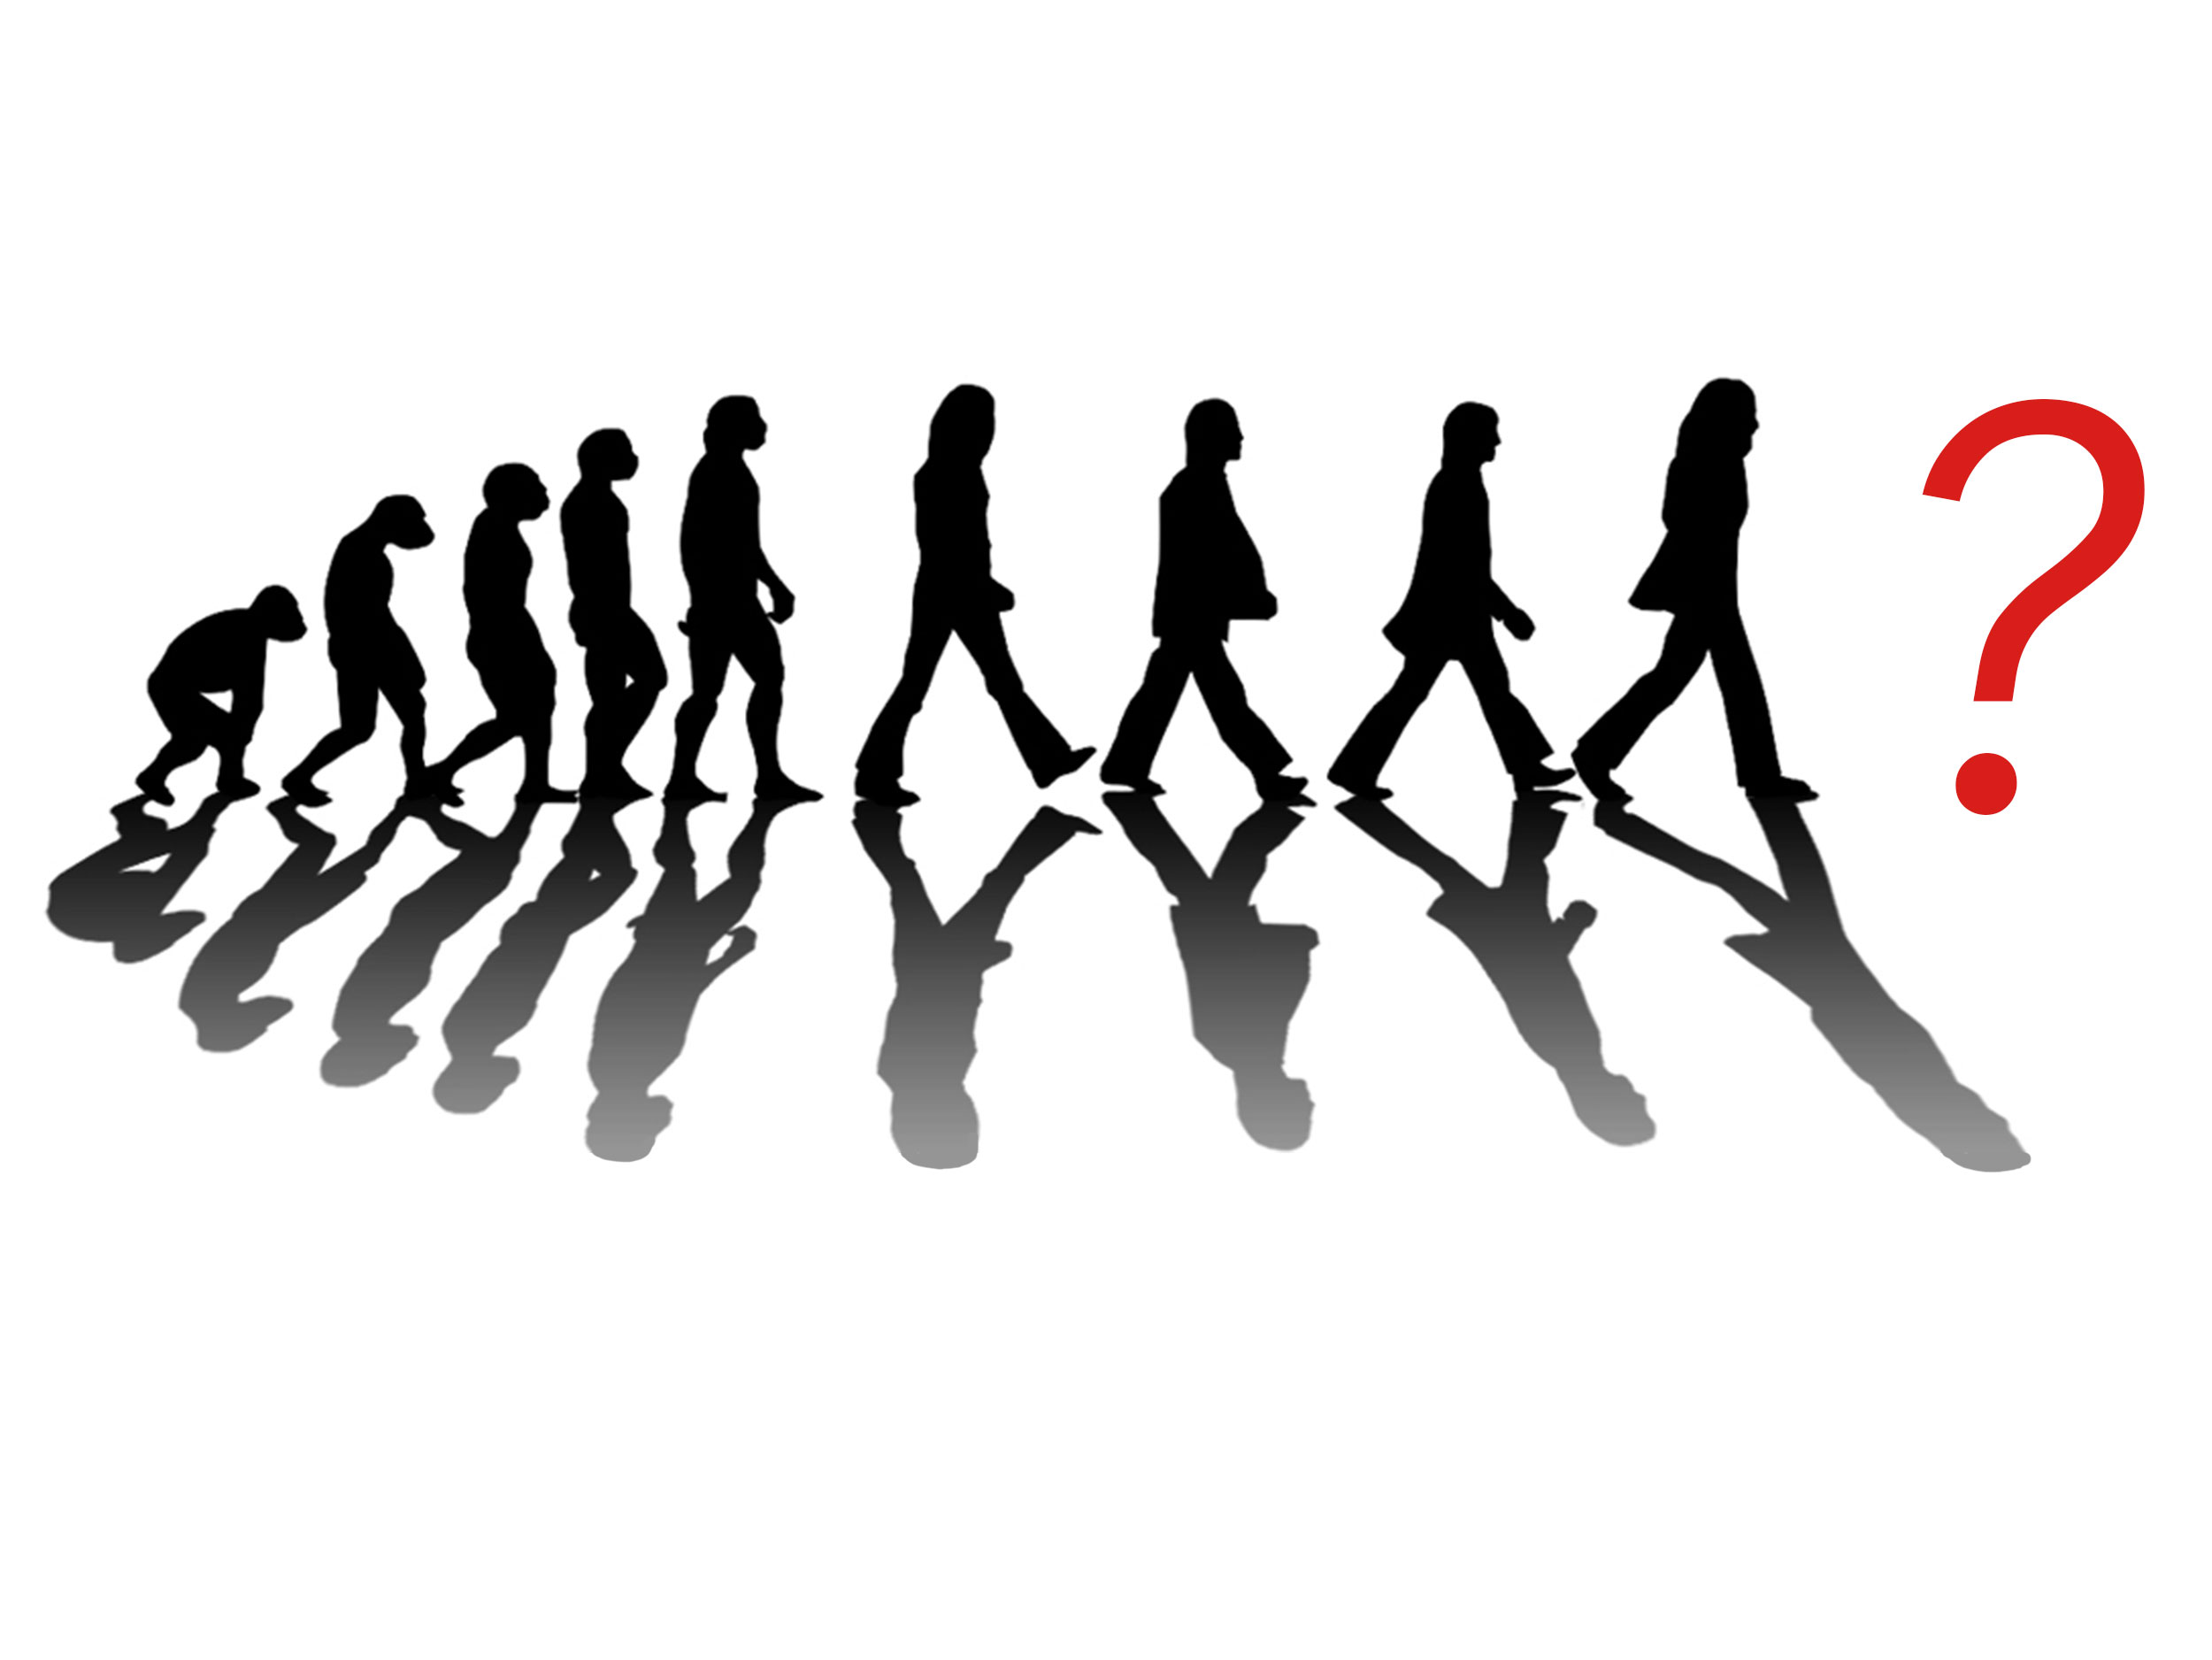 Человеческое общество быстро развивается. Эволюция Битлз. Эволюция общества. Человечество развивается. Эволюция человеческого сообщества.